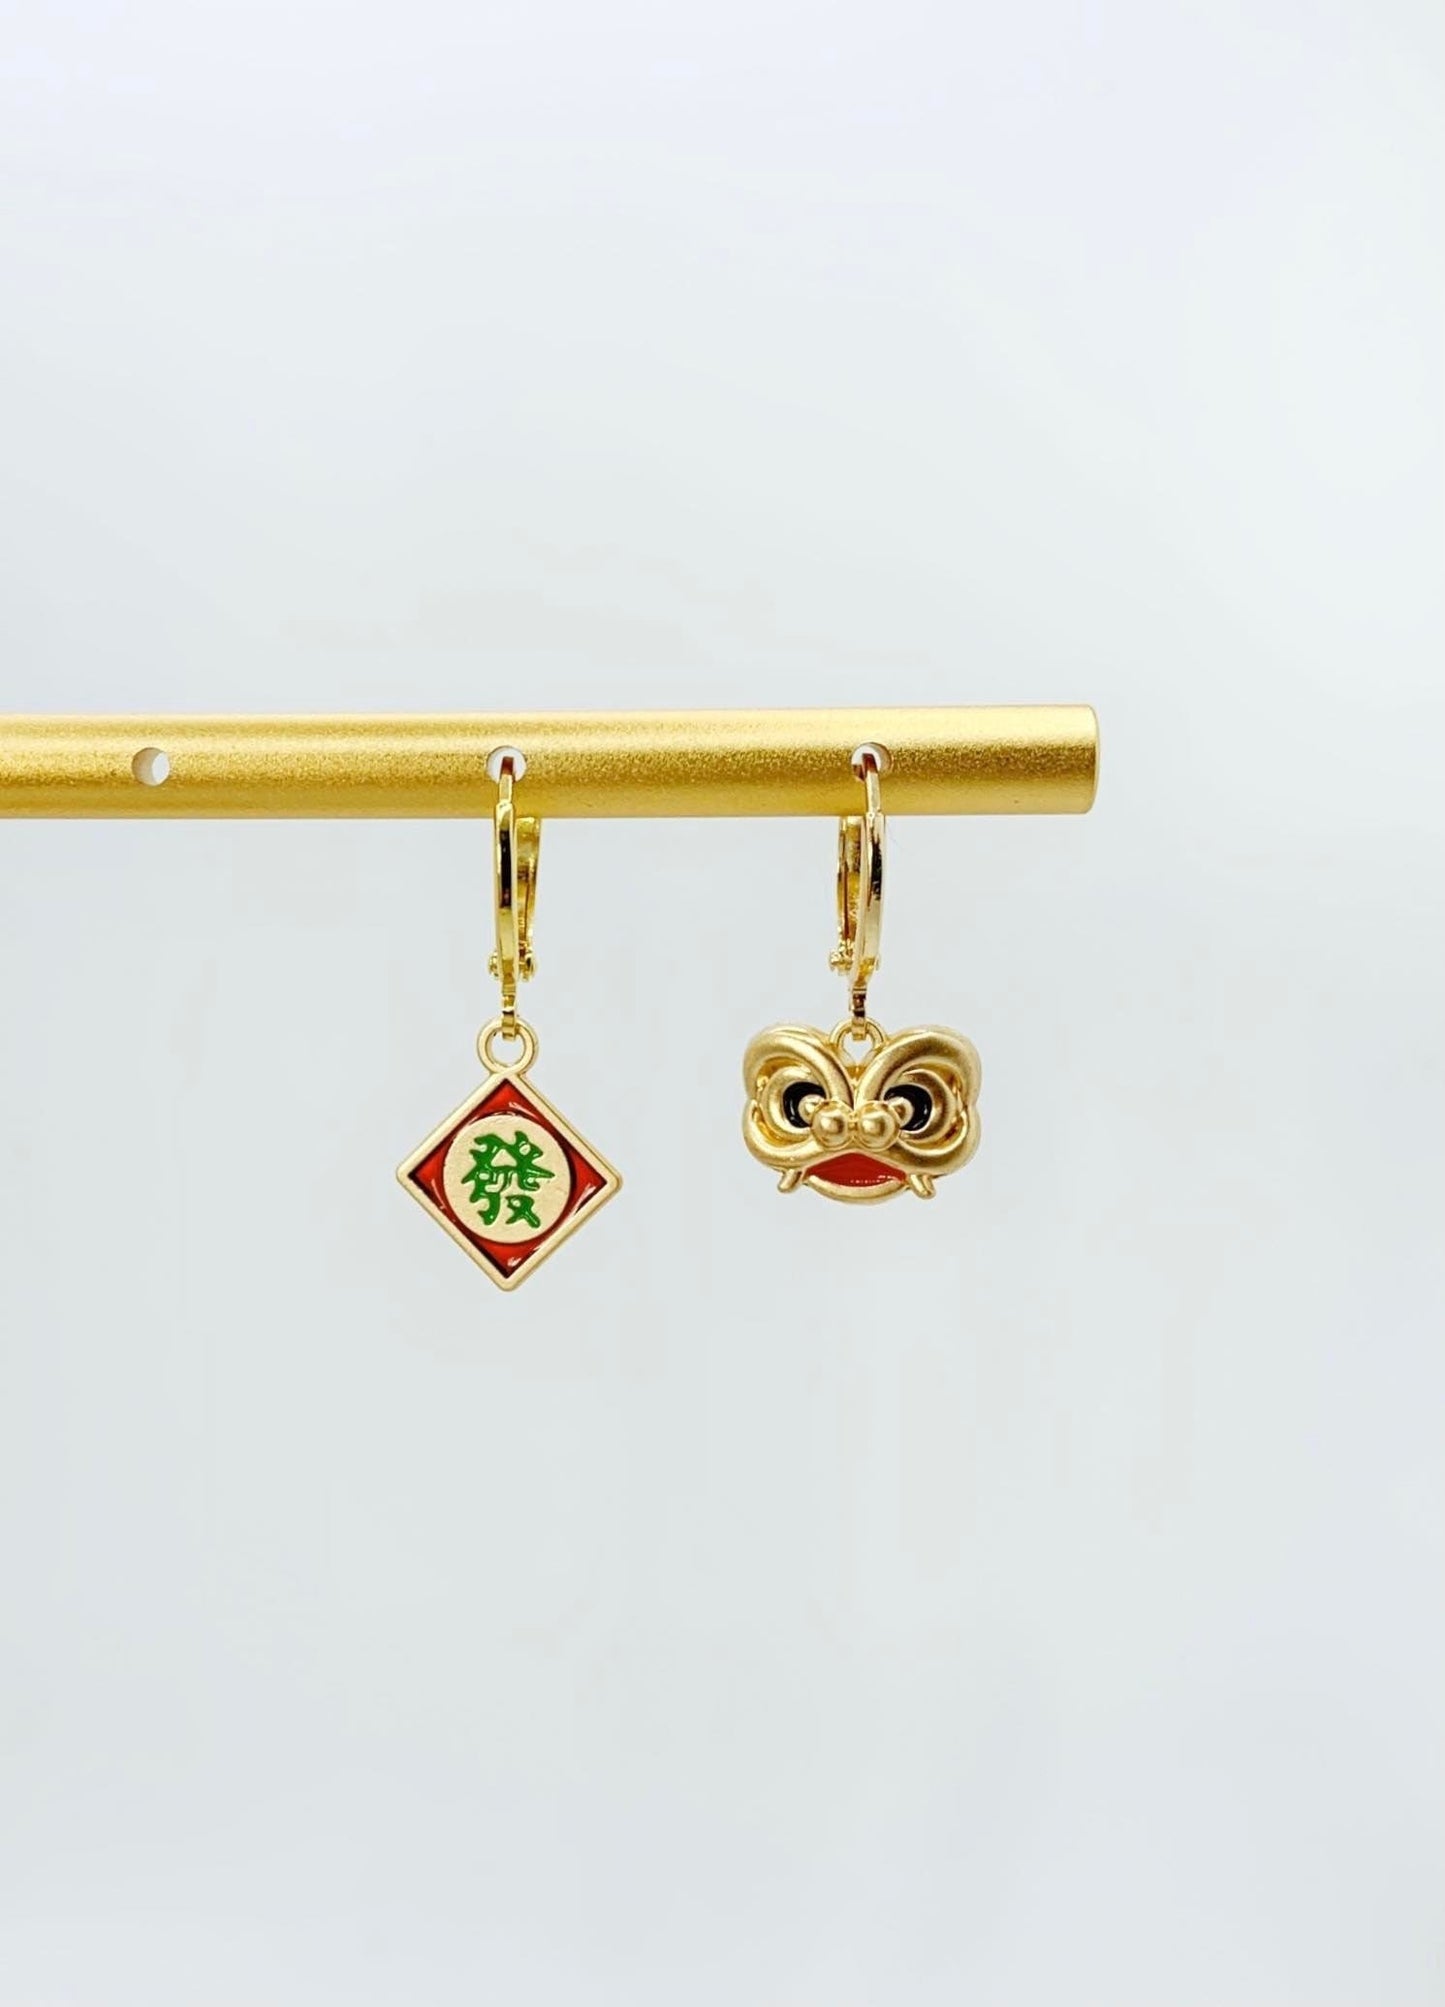 Unique Lunar New Year Lion Dance Earrings